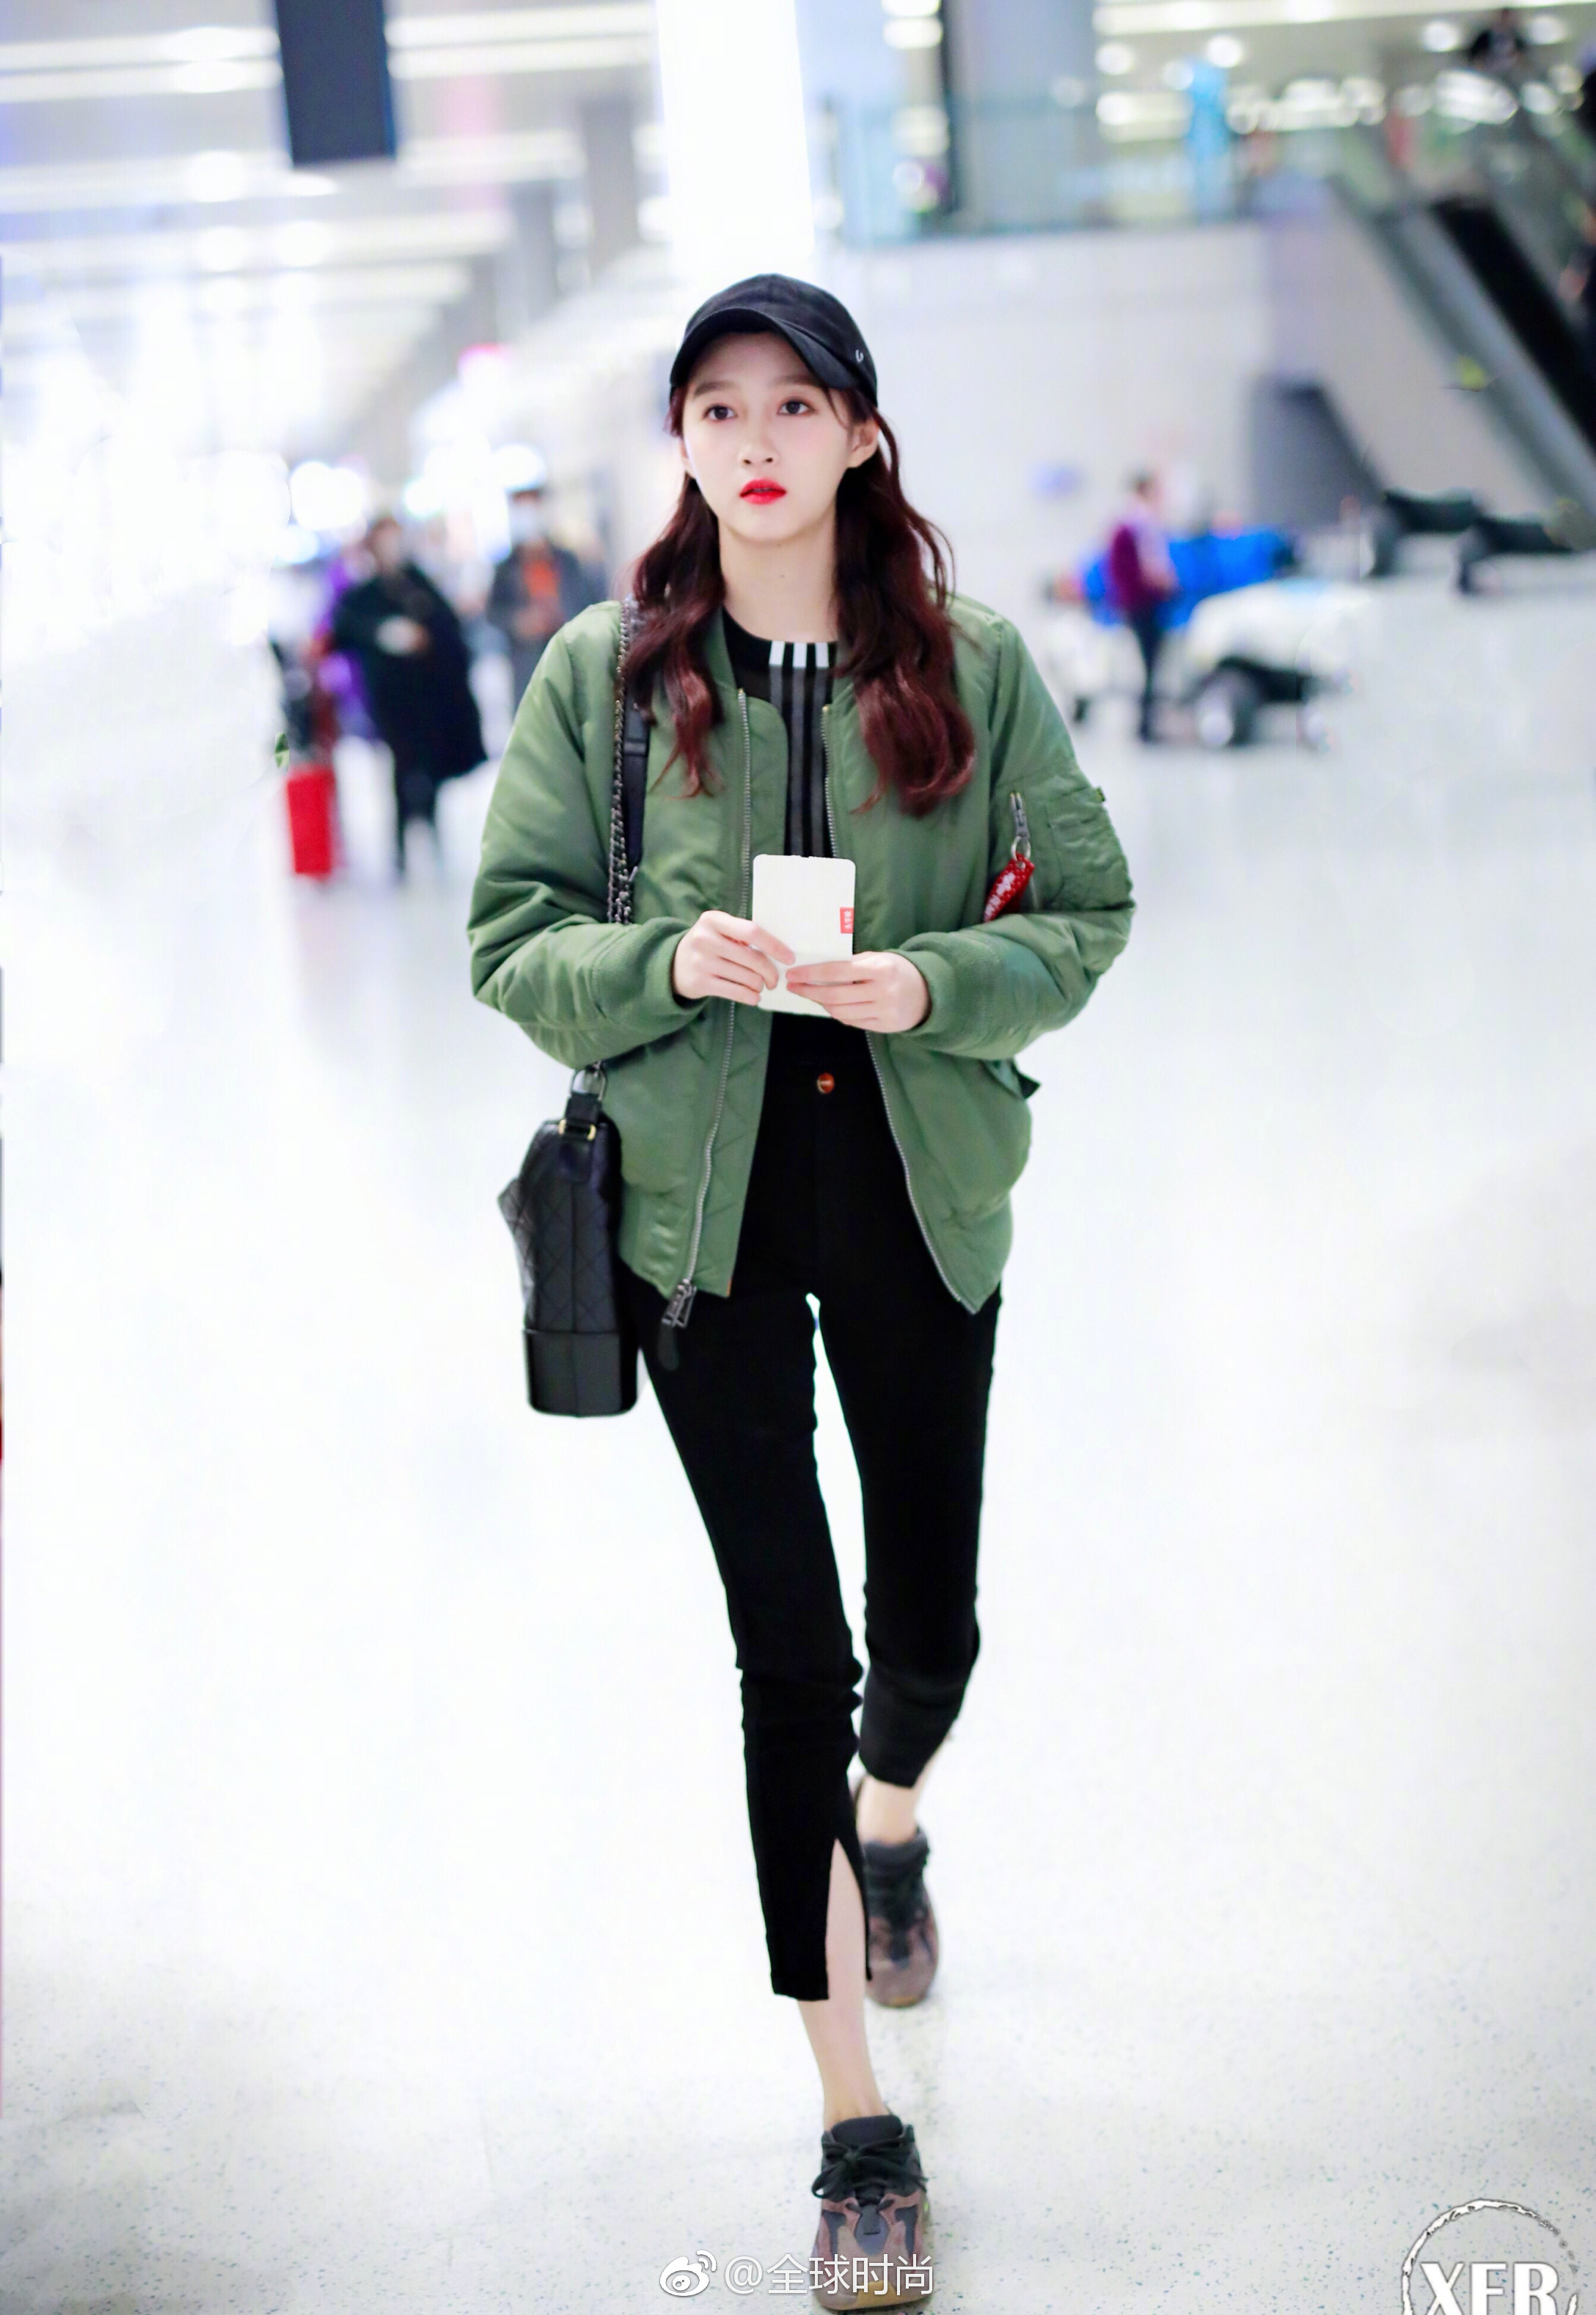 时尚明星关晓彤 近日机场照片,绿色飞行员夹克搭配黑色牛仔裤,这套